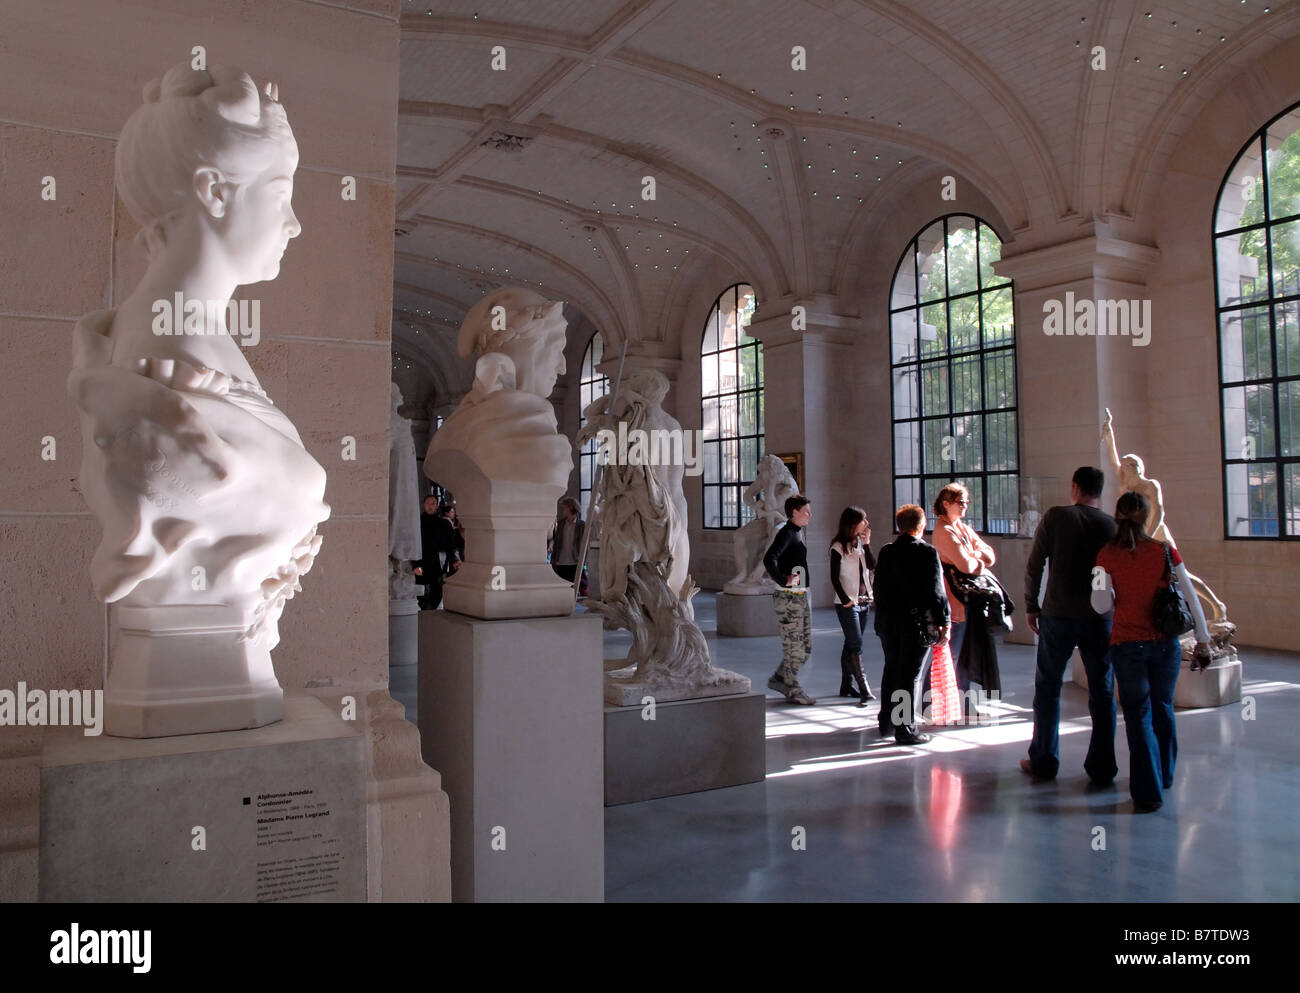 Galerie de sculptures au Palais des Beaux Arts, Lille, France Banque D'Images